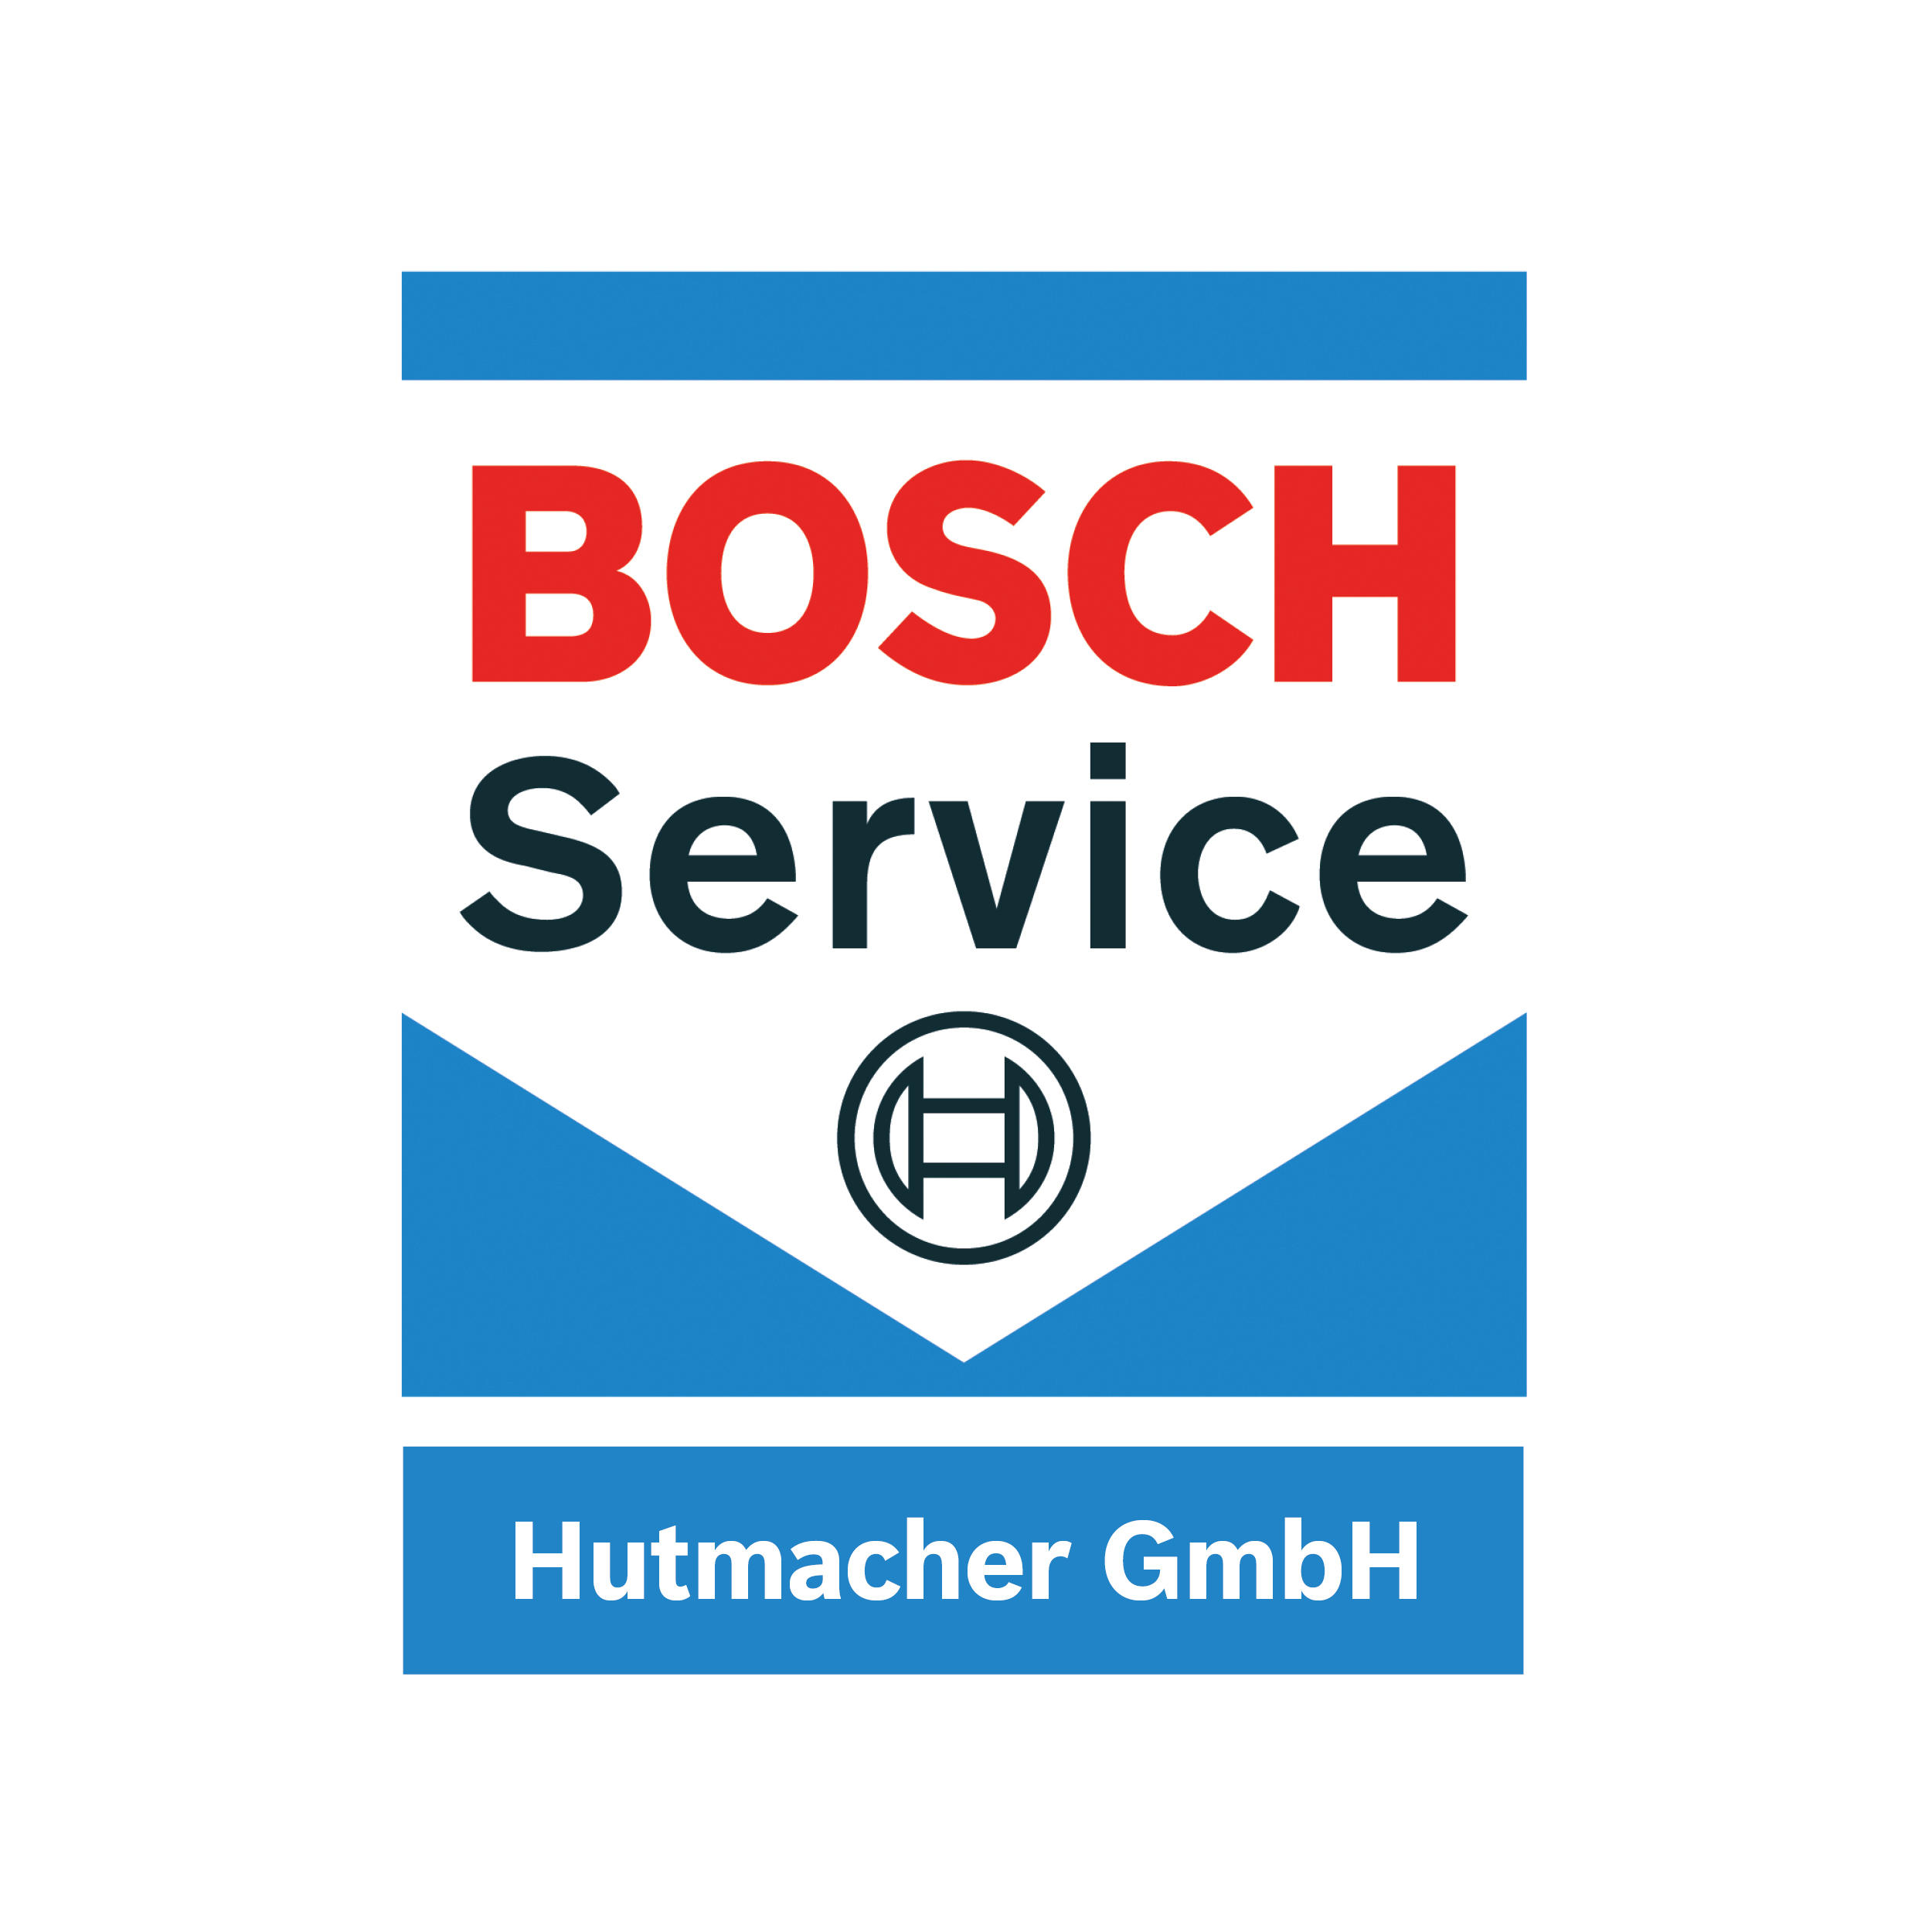 Hutmacher GmbH Bosch Service in Mönchengladbach - Logo